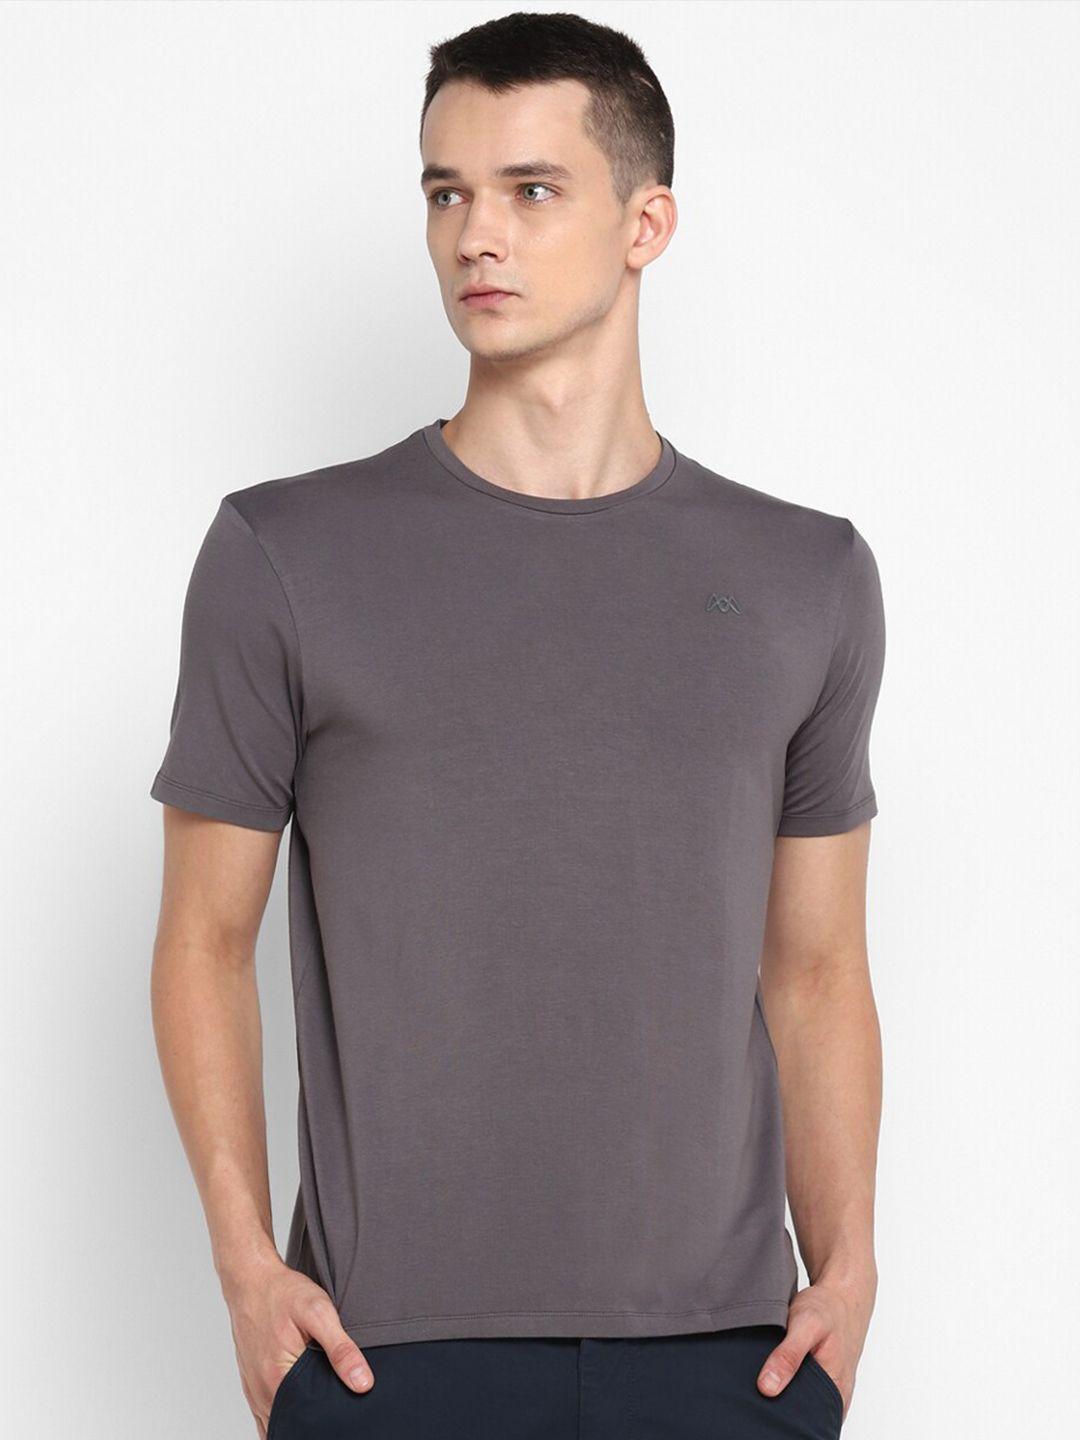 muwin men grey t-shirt